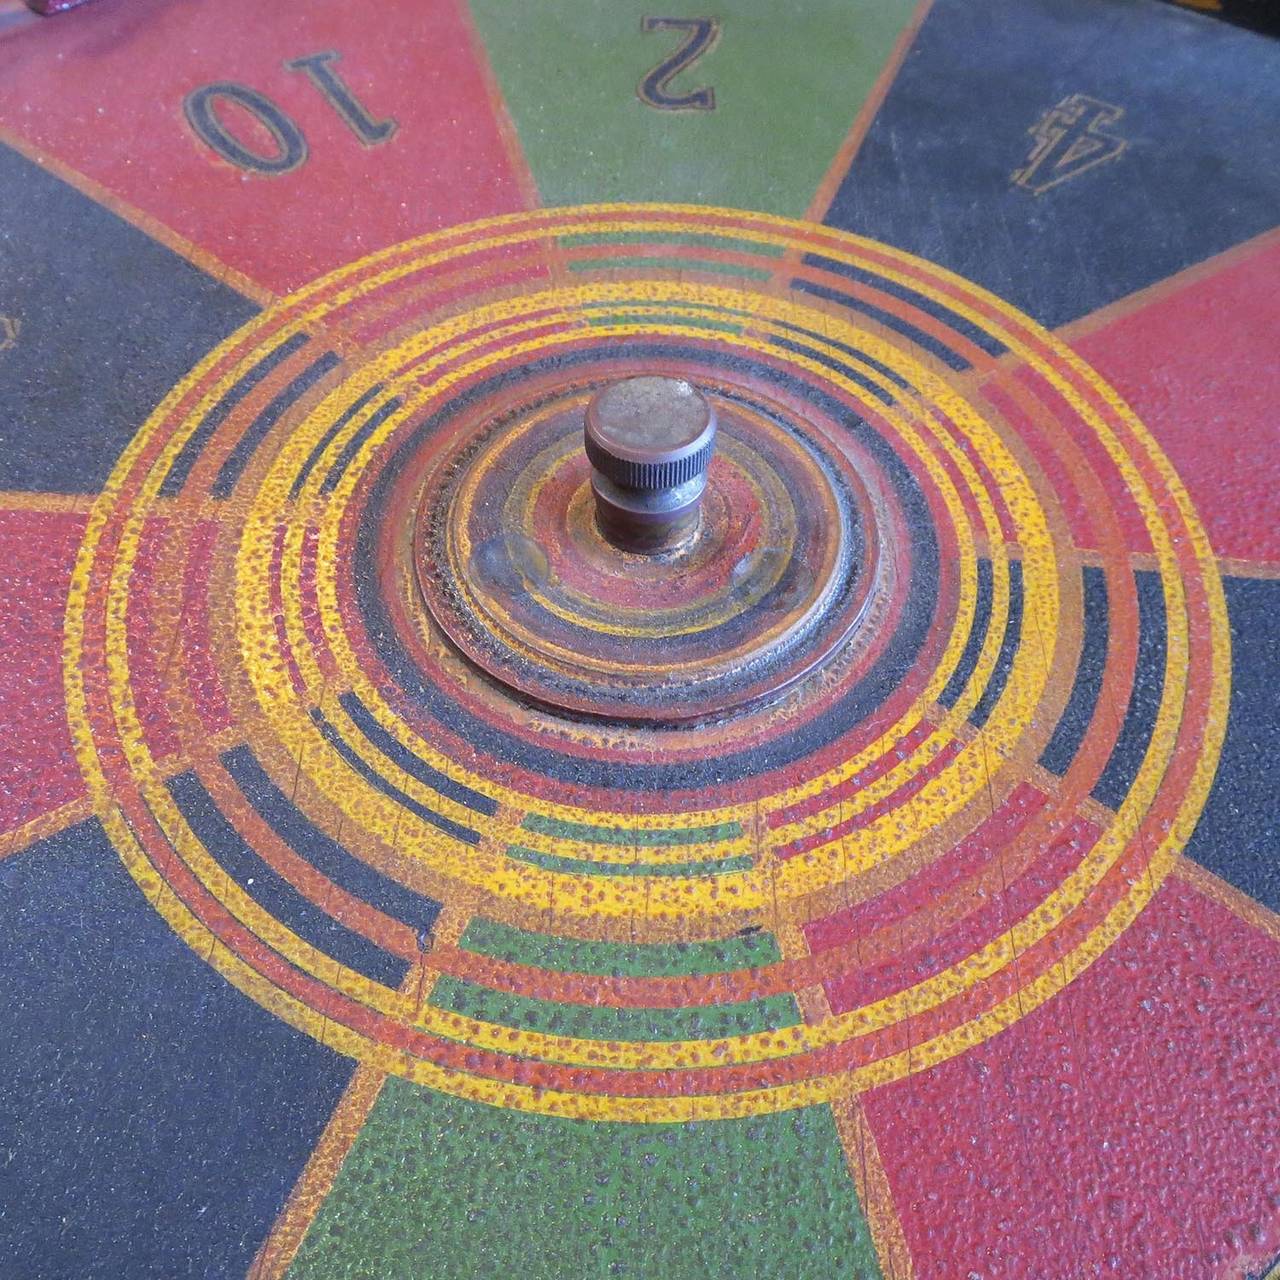 Painted Horse Racing Tabletop Gambling Wheel